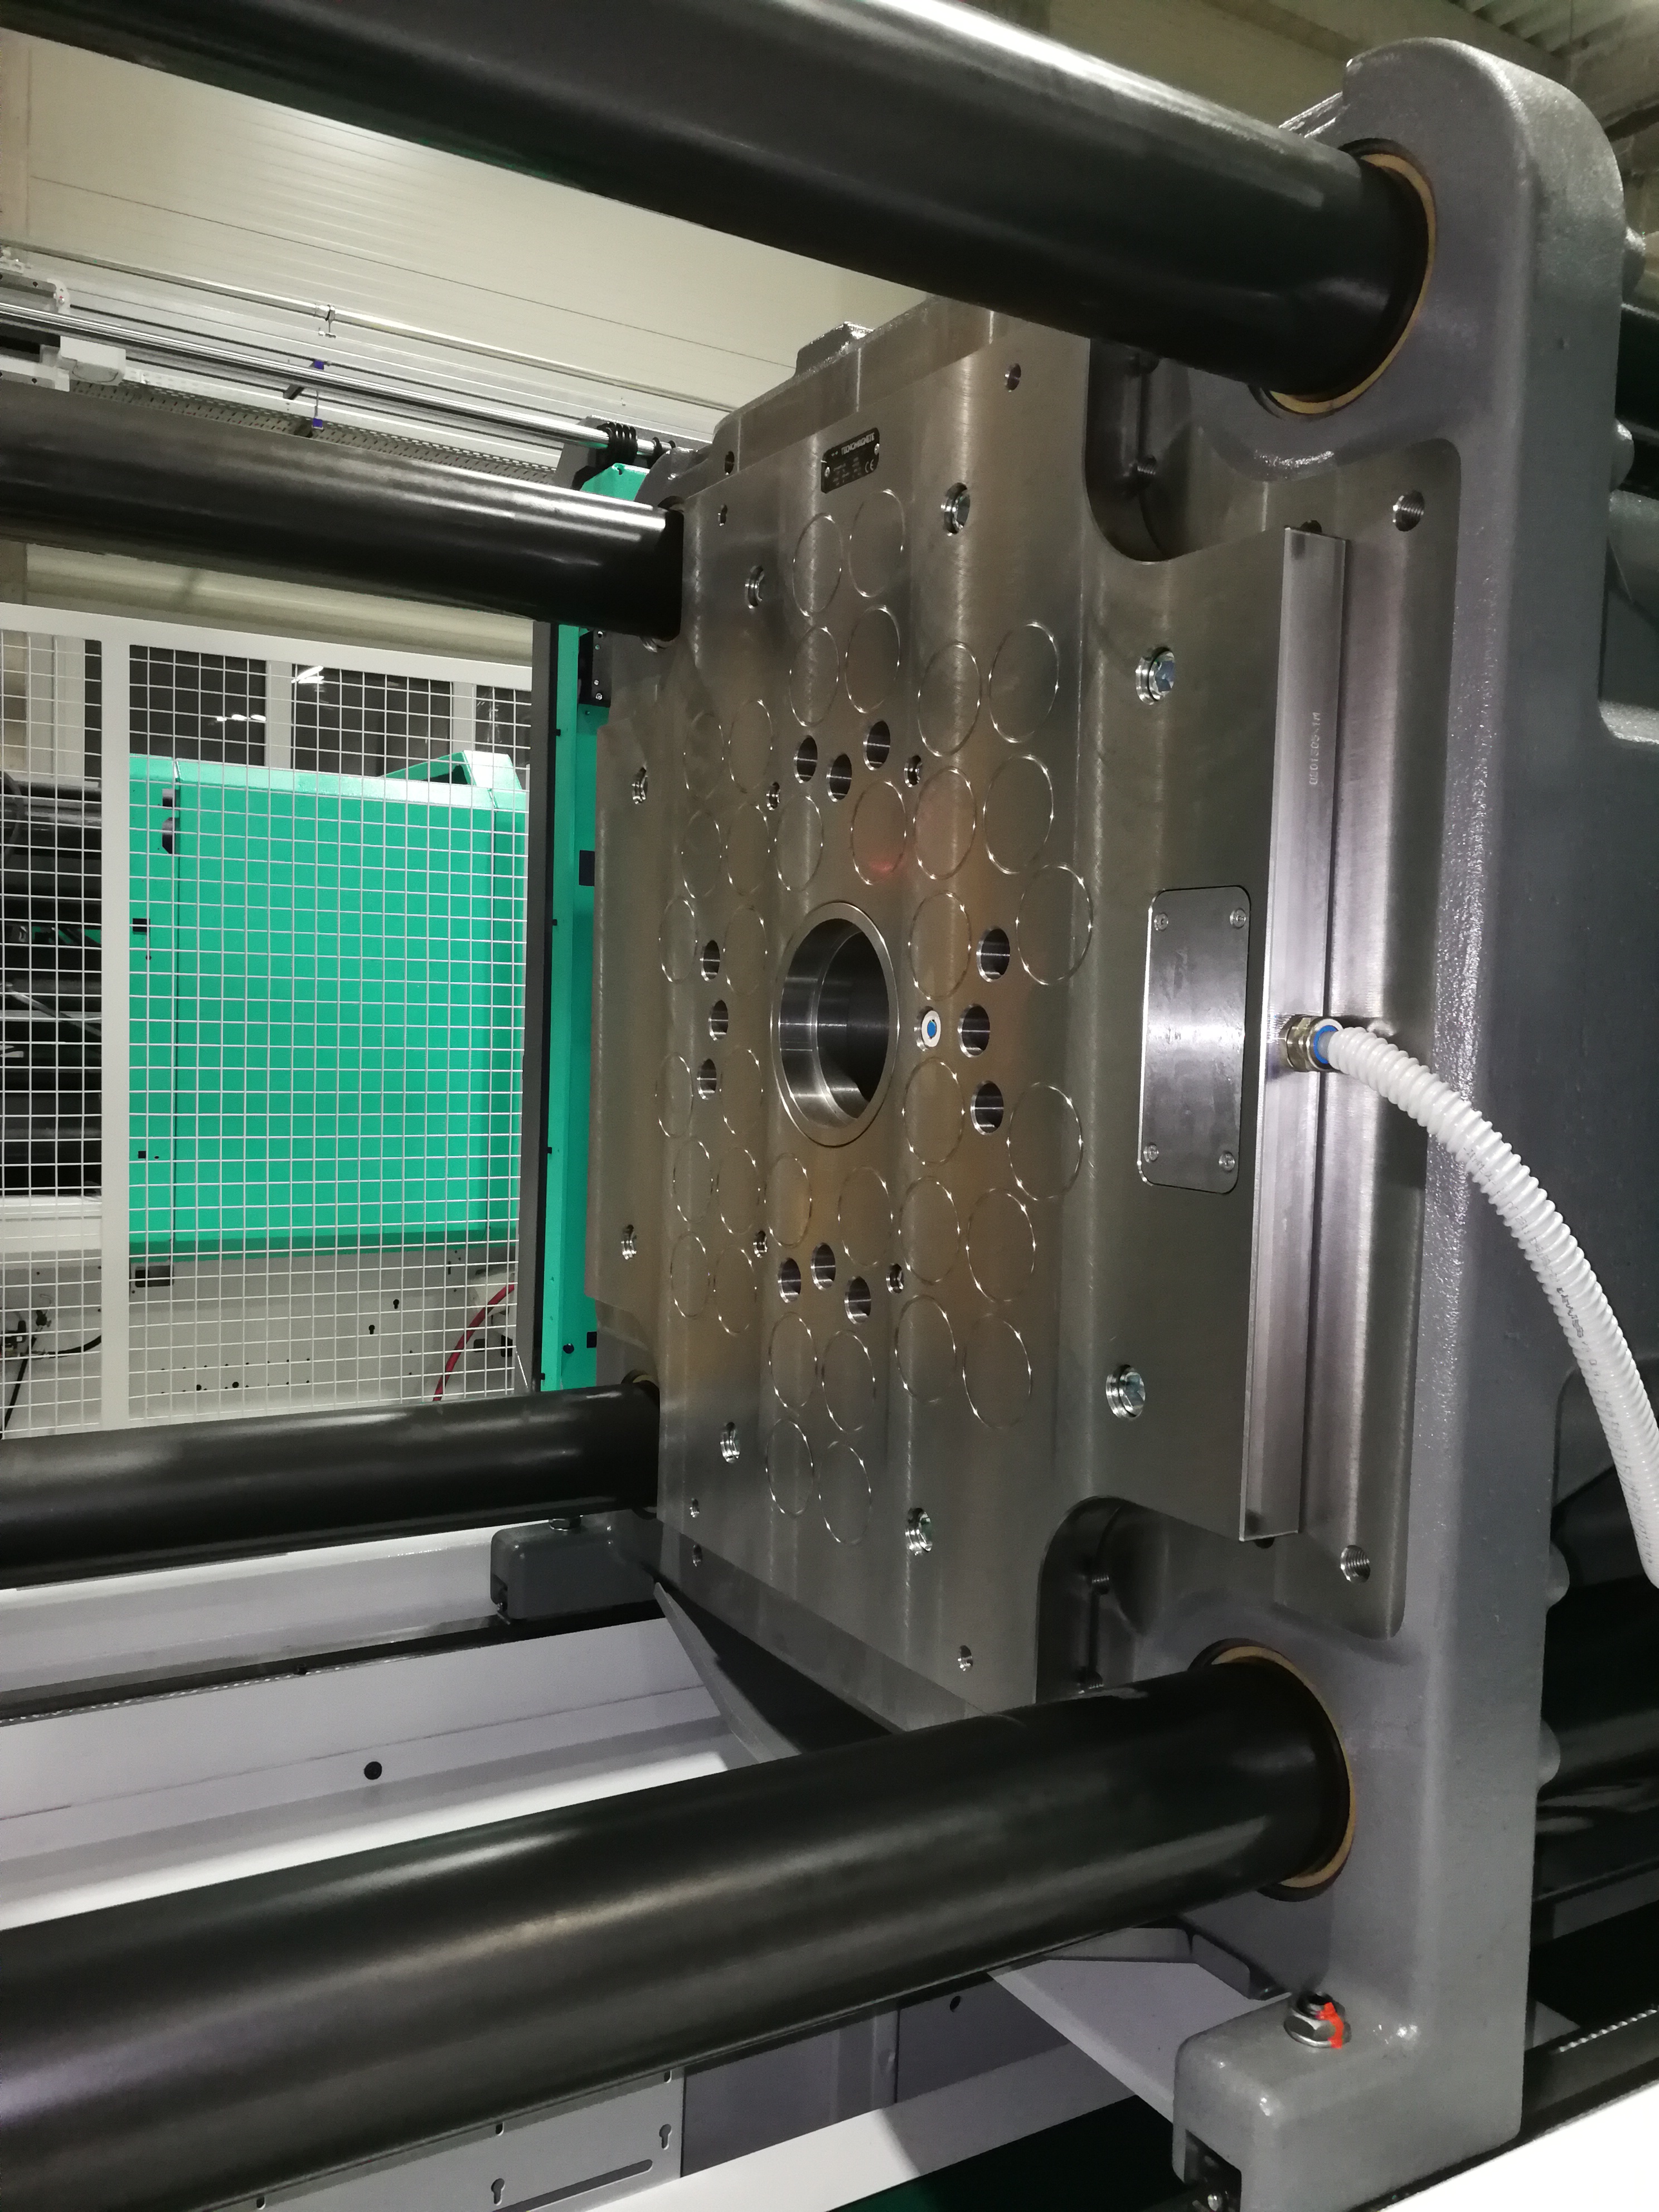 PressTec PT elektro-permanens mágneses szerszámrögzítő rendszer Arburg fröccsöntőgépen